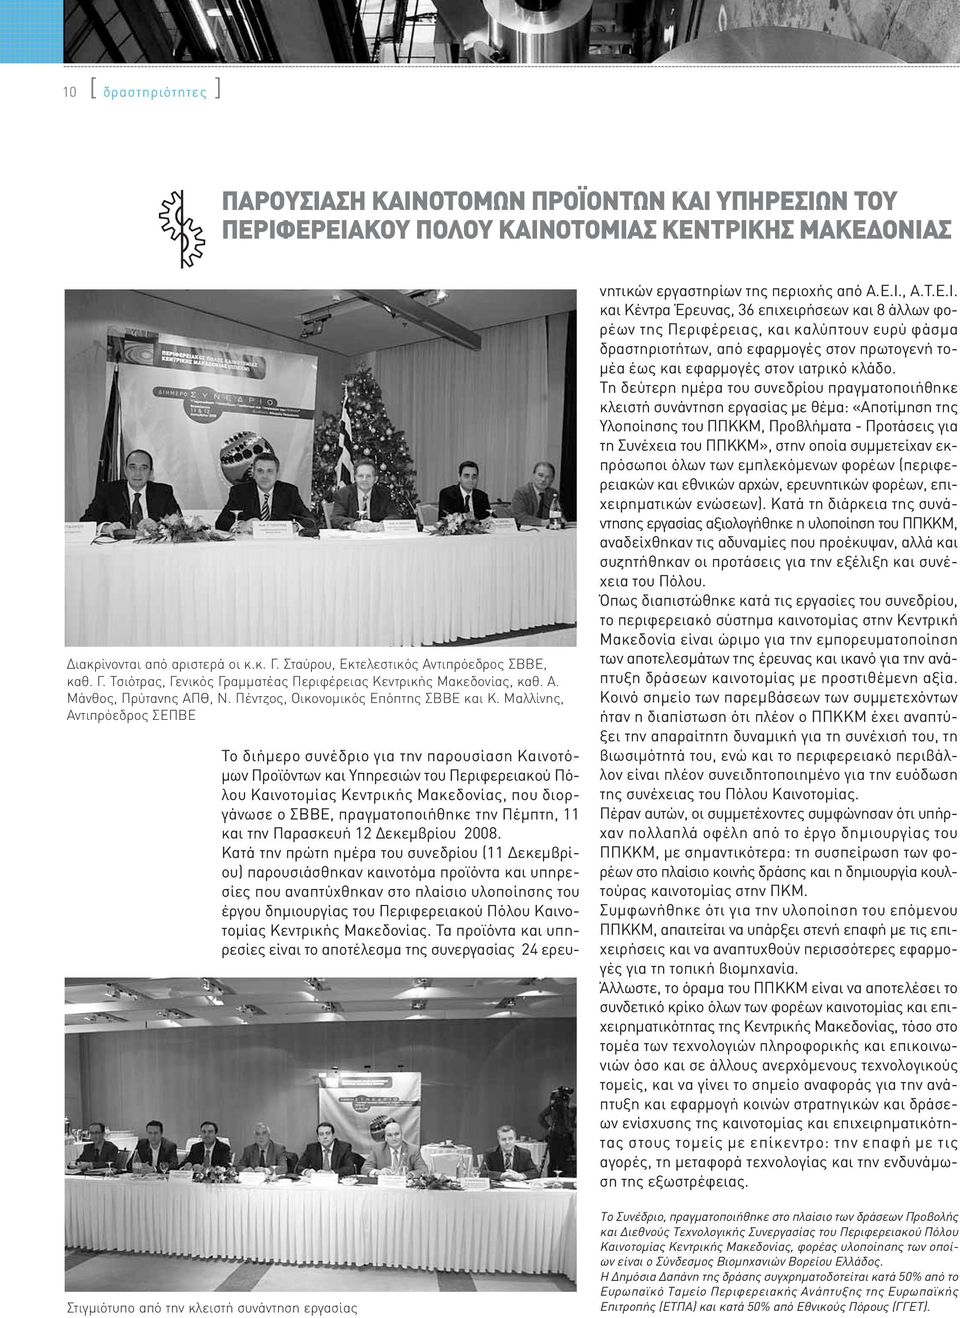 Μαλλίνης, Αντιπρόεδρος ΣΕΠΒΕ Στιγμιότυπο από την κλειστή συνάντηση εργασίας Το διήμερο συνέδριο για την παρουσίαση Καινοτόμων Προϊόντων και Υπηρεσιών του Περιφερειακού Πόλου Καινοτομίας Κεντρικής